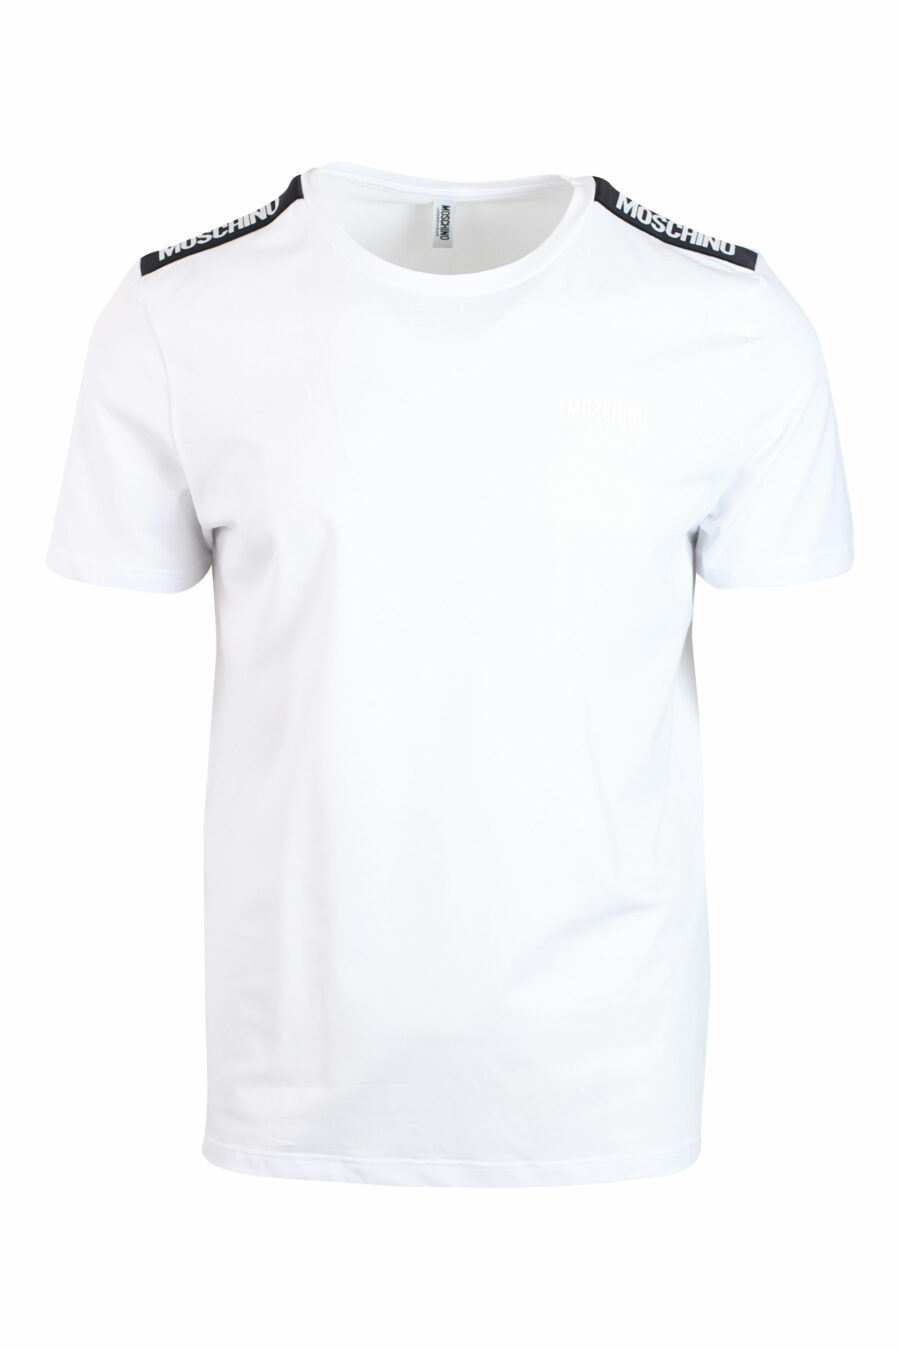 Lot de deux T-shirts blancs avec logo sur l'épaule - IMG 0131